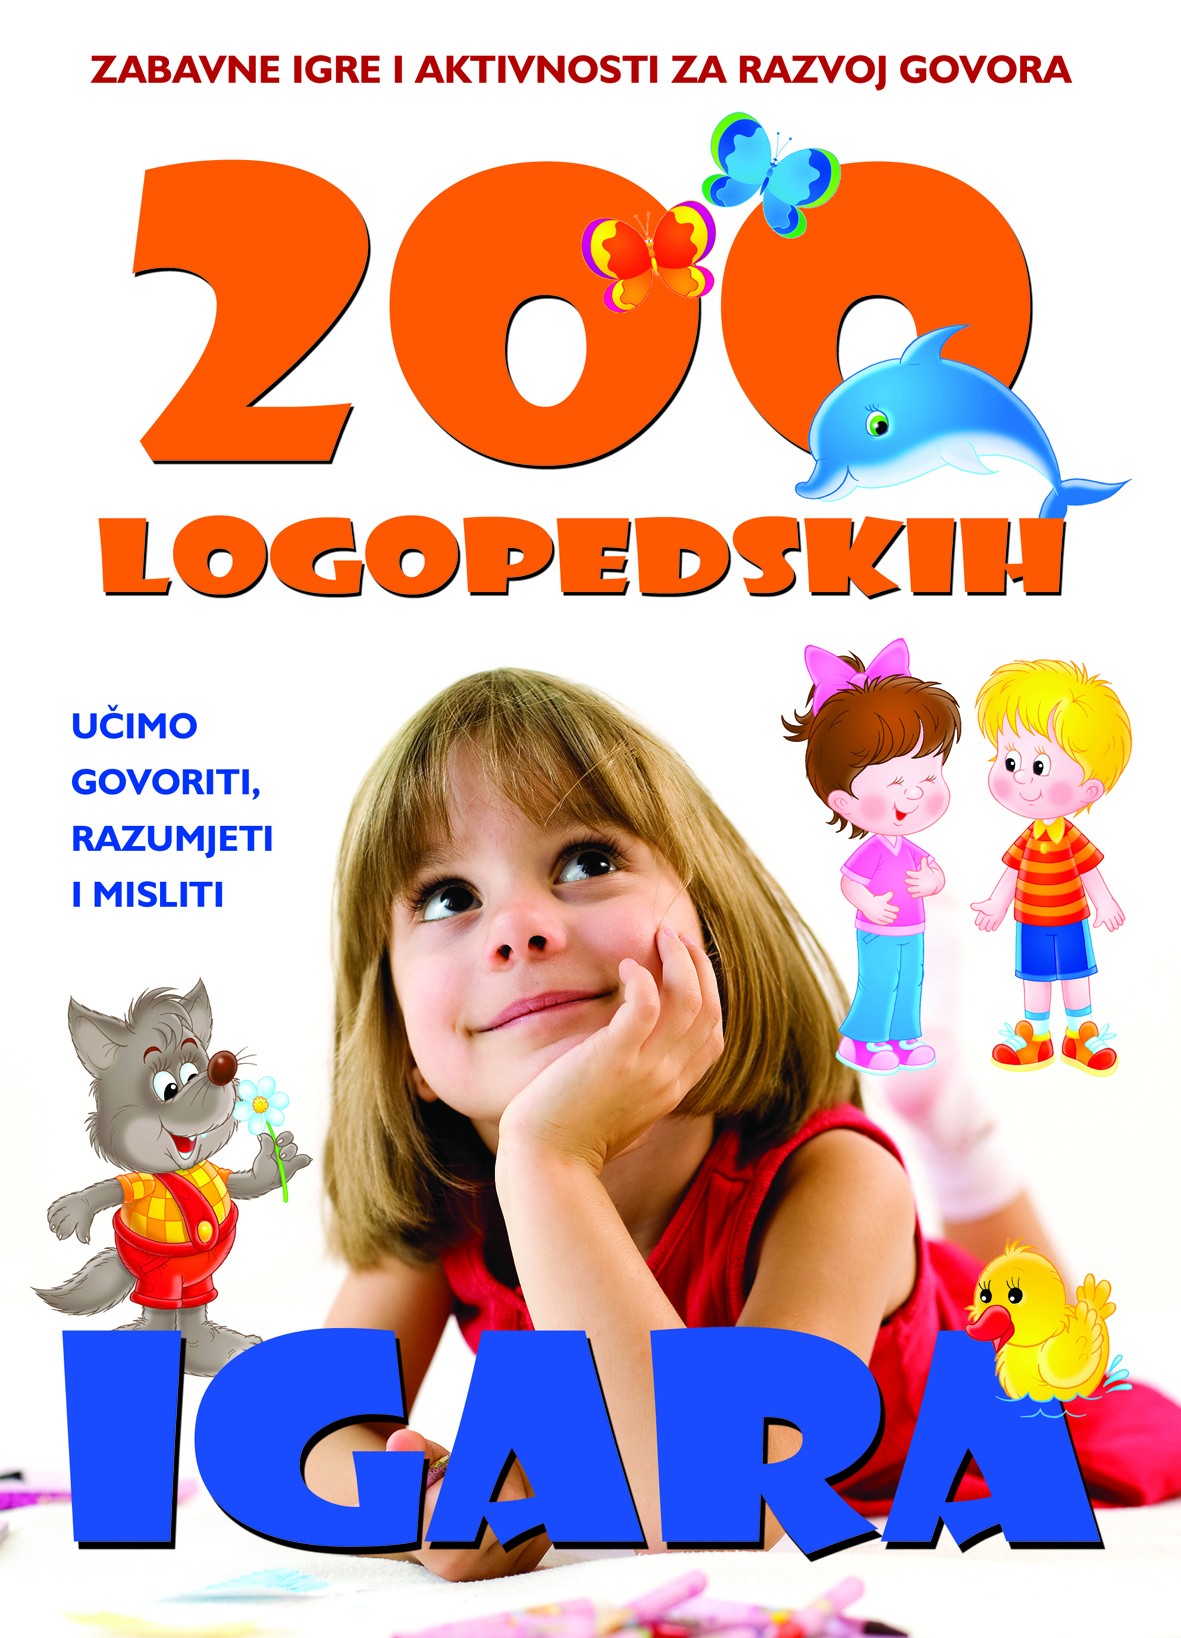 200 LOGOPEDSKIH IGARA - Zabavne igre i aktivnosti za razvoj govora, 7. izdanje (za 4+ godine)